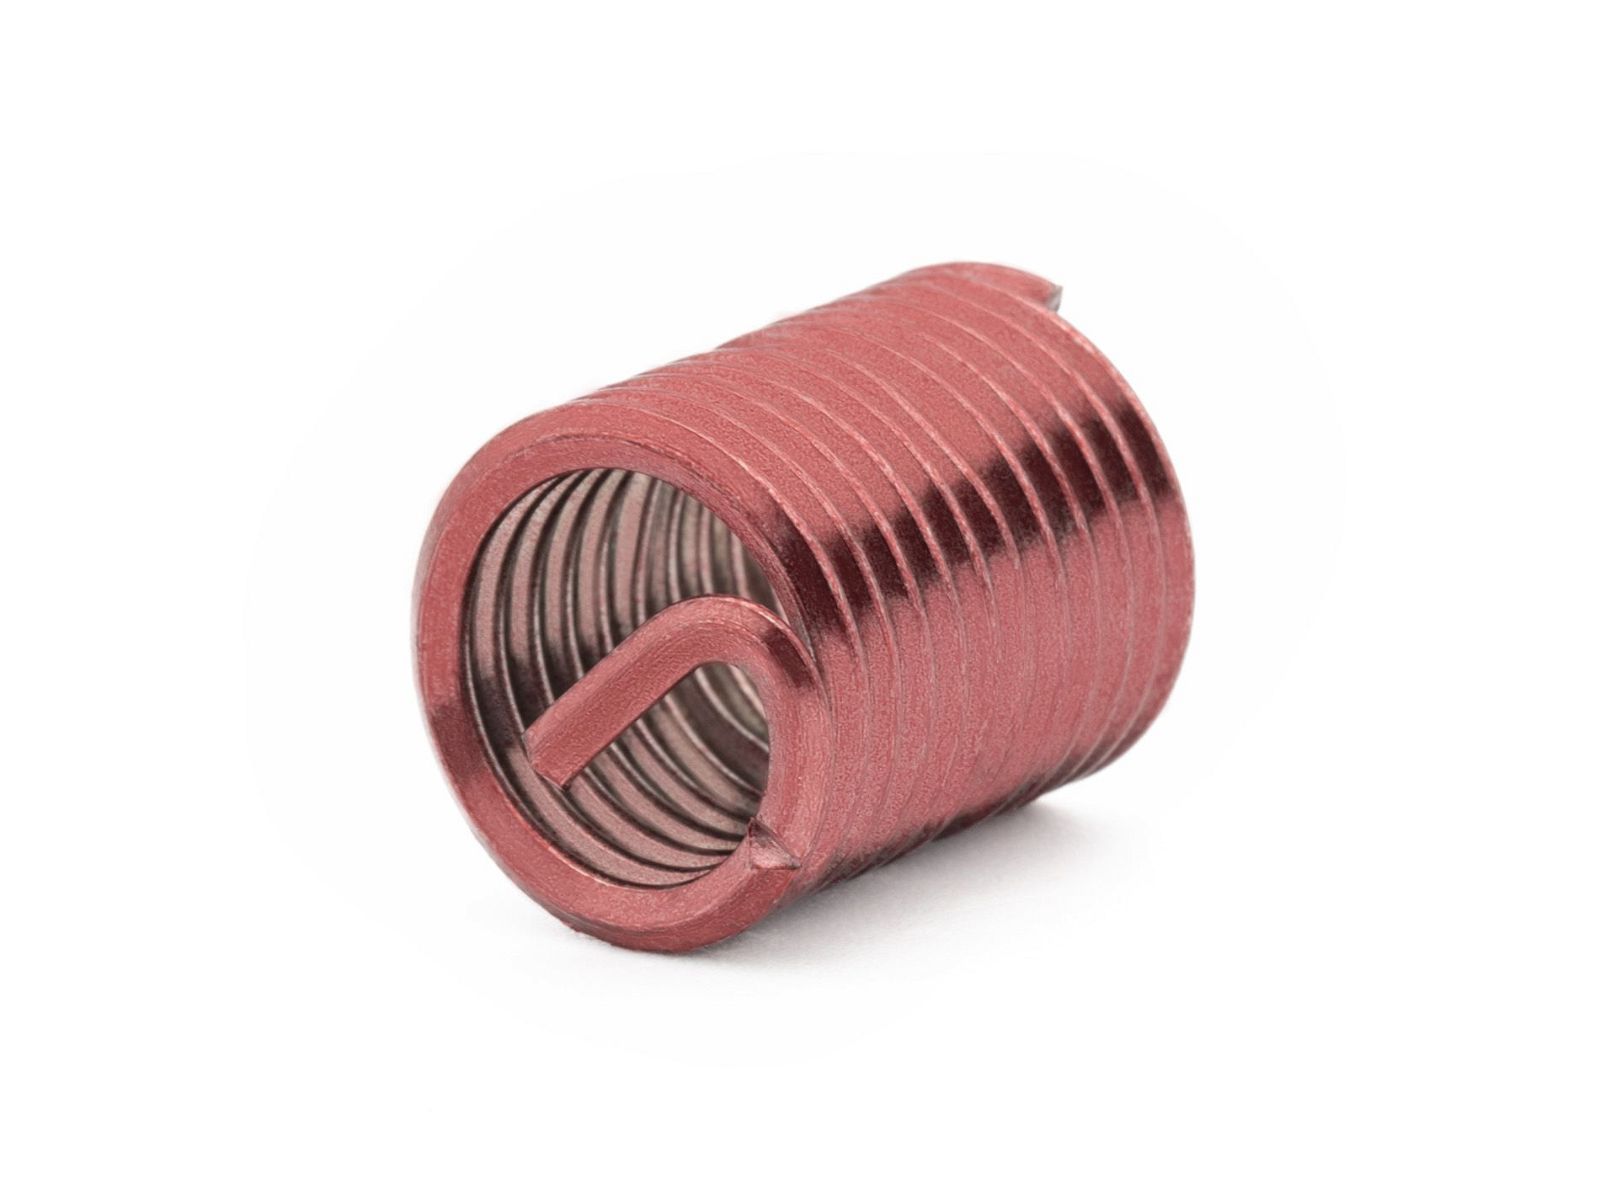 BaerCoil Wire Thread Inserts BA 6 - 2.0 D (5.6 mm) - screw grip (screw locking) - 100 pcs.